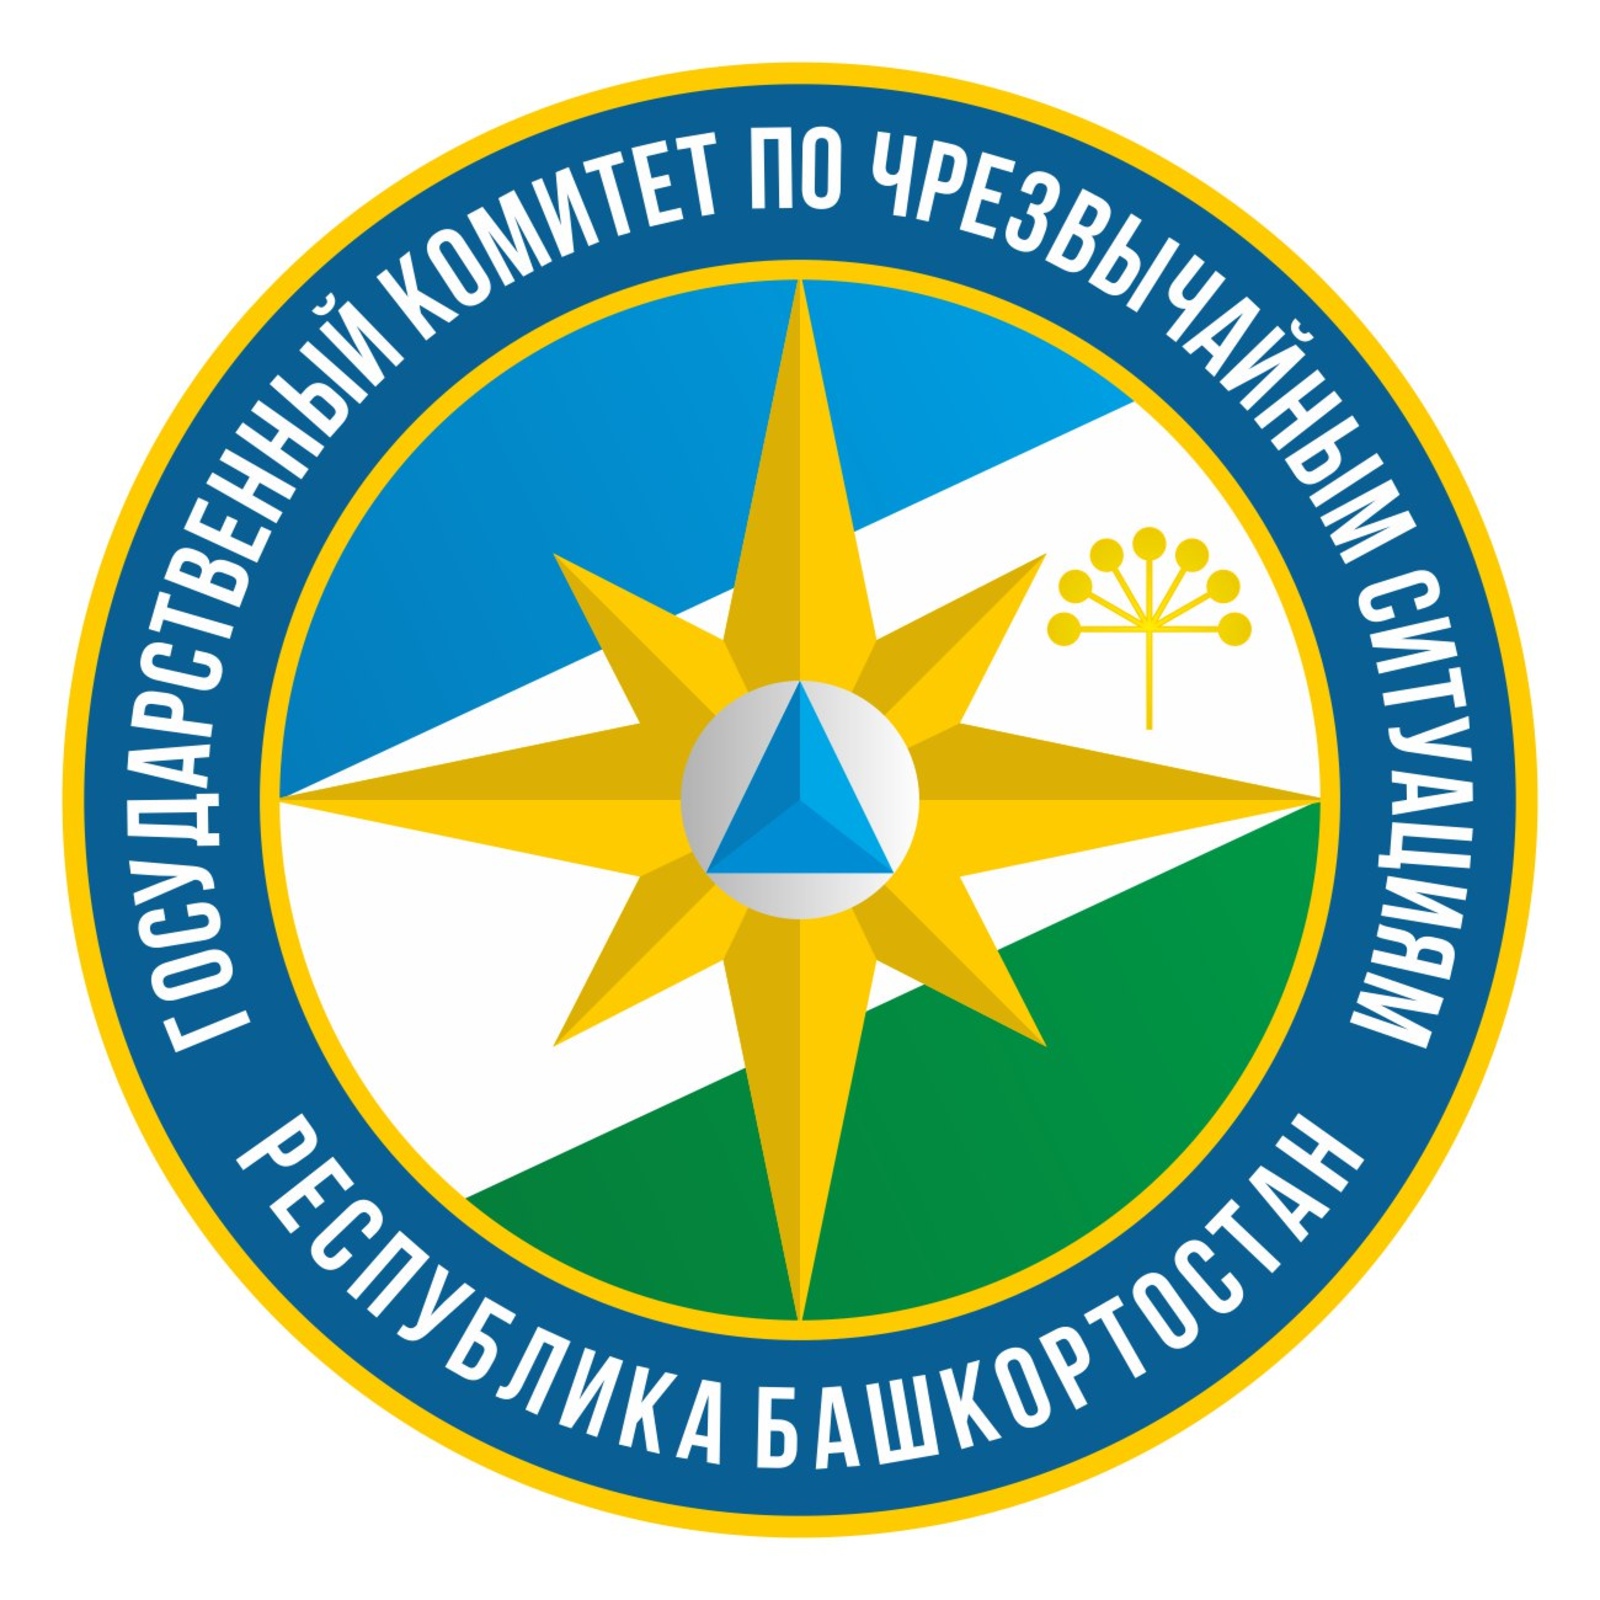 Государственный комитет Республики Башкортостан по чрезвычайным ситуациям предупреждает - безопасность прежде всего!